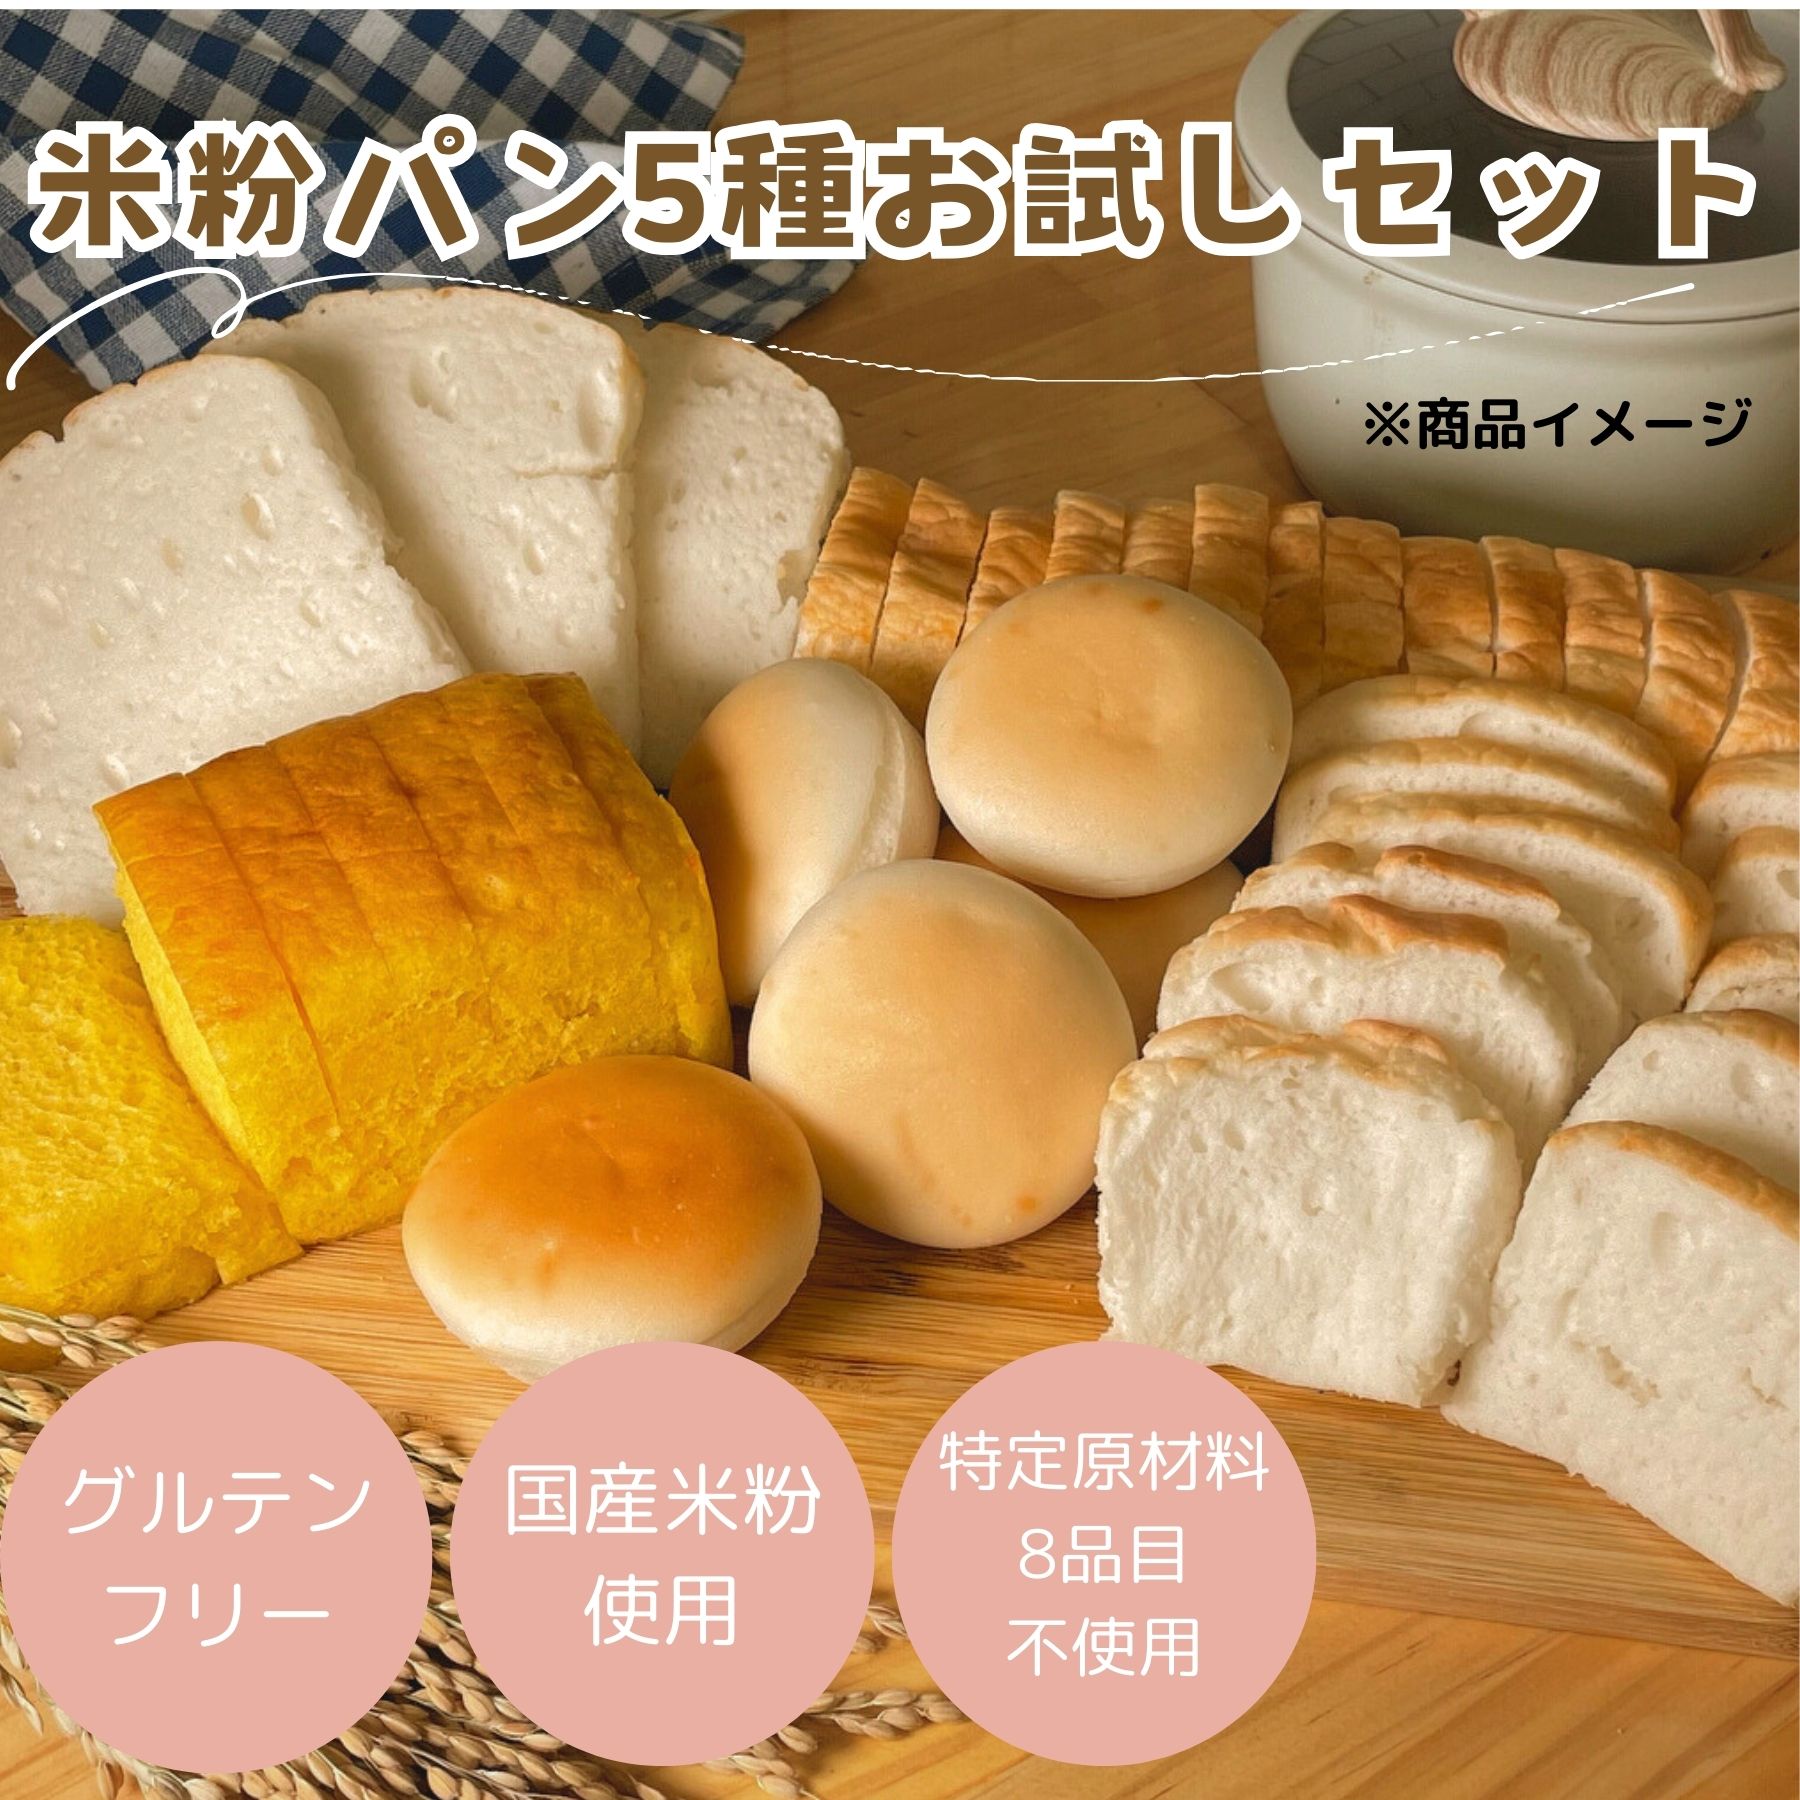 米粉パン (公式) みんなの食卓 米粉パン アソートセット 5種 お試し 日本ハム グルテンフリー アレルギー対応 送料無料 冷凍